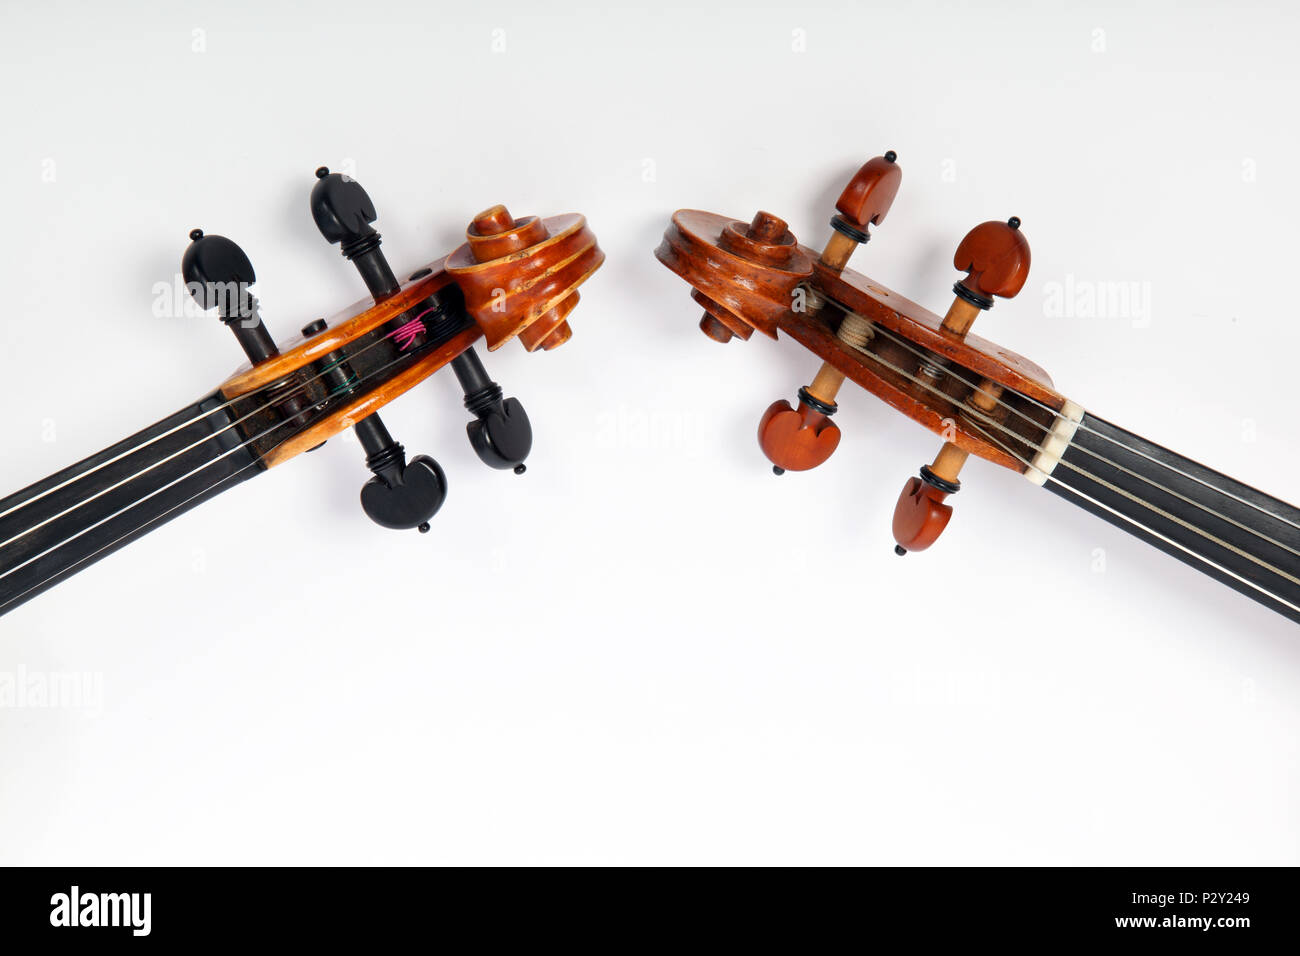 Generisch, Nahaufnahme der Violinen und Teile von Geigen - Brücke